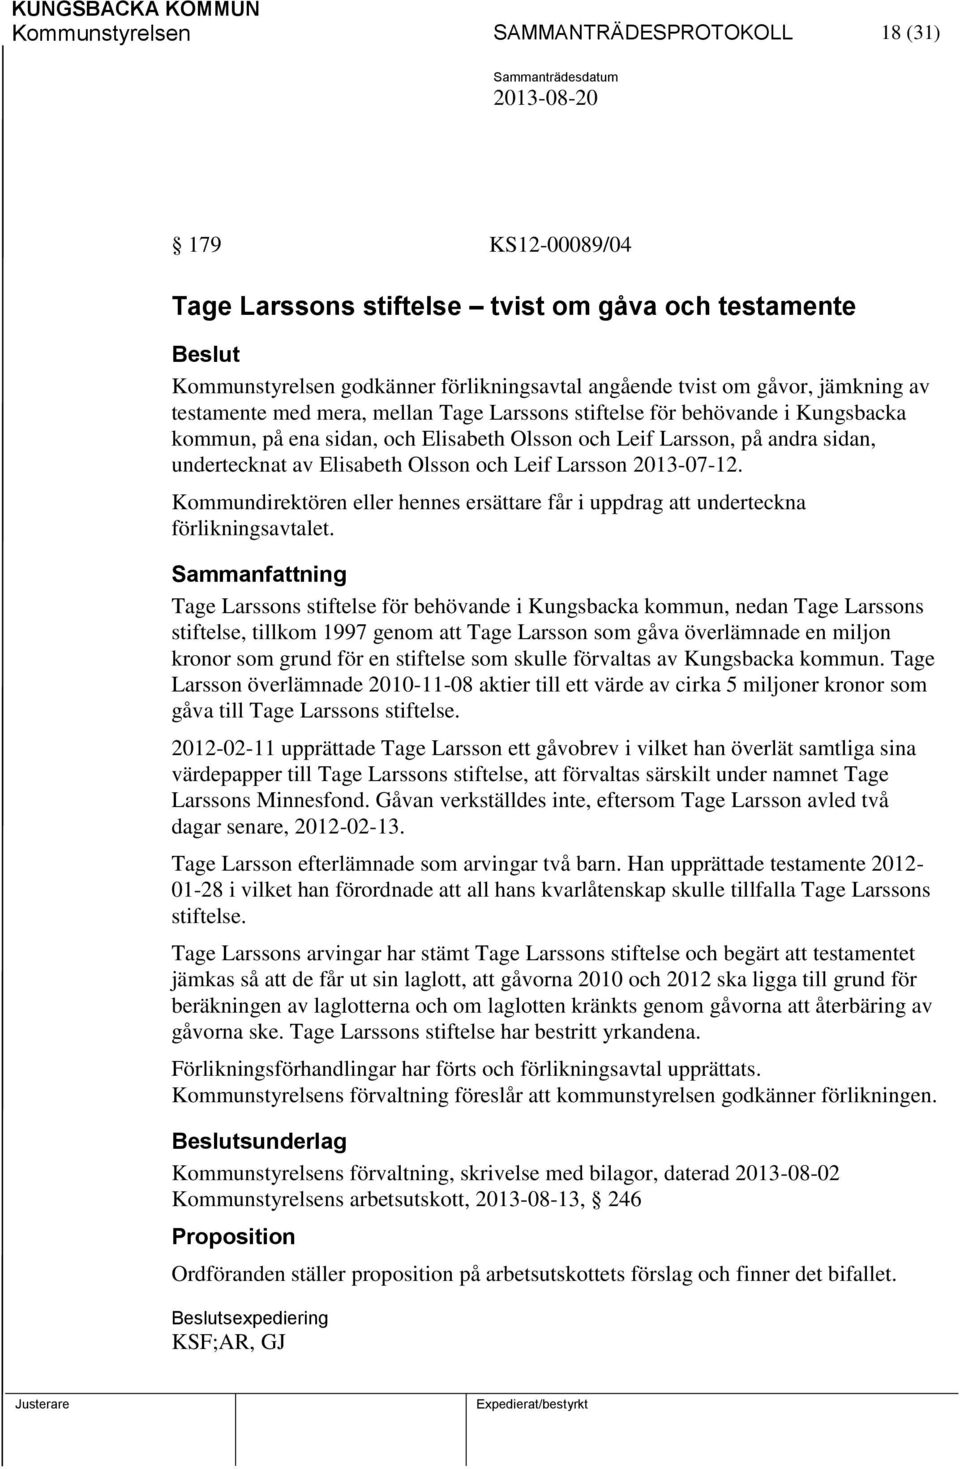 Olsson och Leif Larsson 2013-07-12. Kommundirektören eller hennes ersättare får i uppdrag att underteckna förlikningsavtalet.